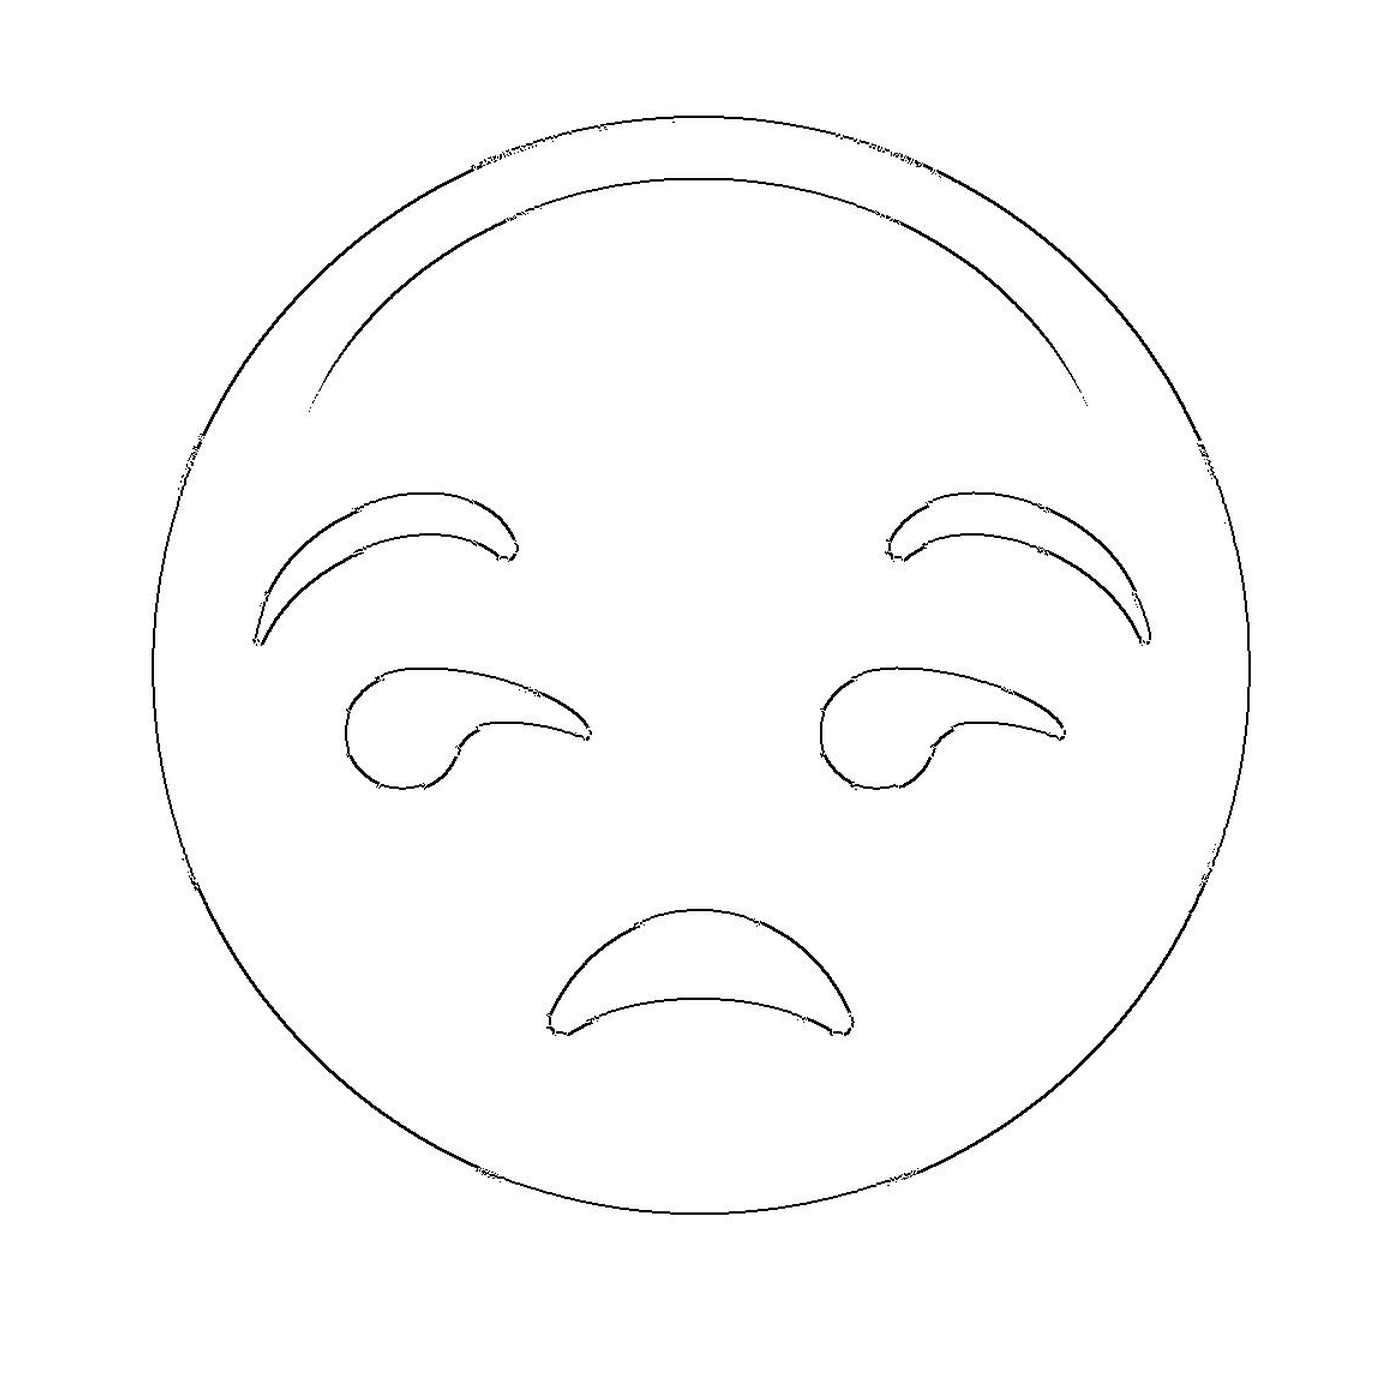  Un volto triste disegnato 